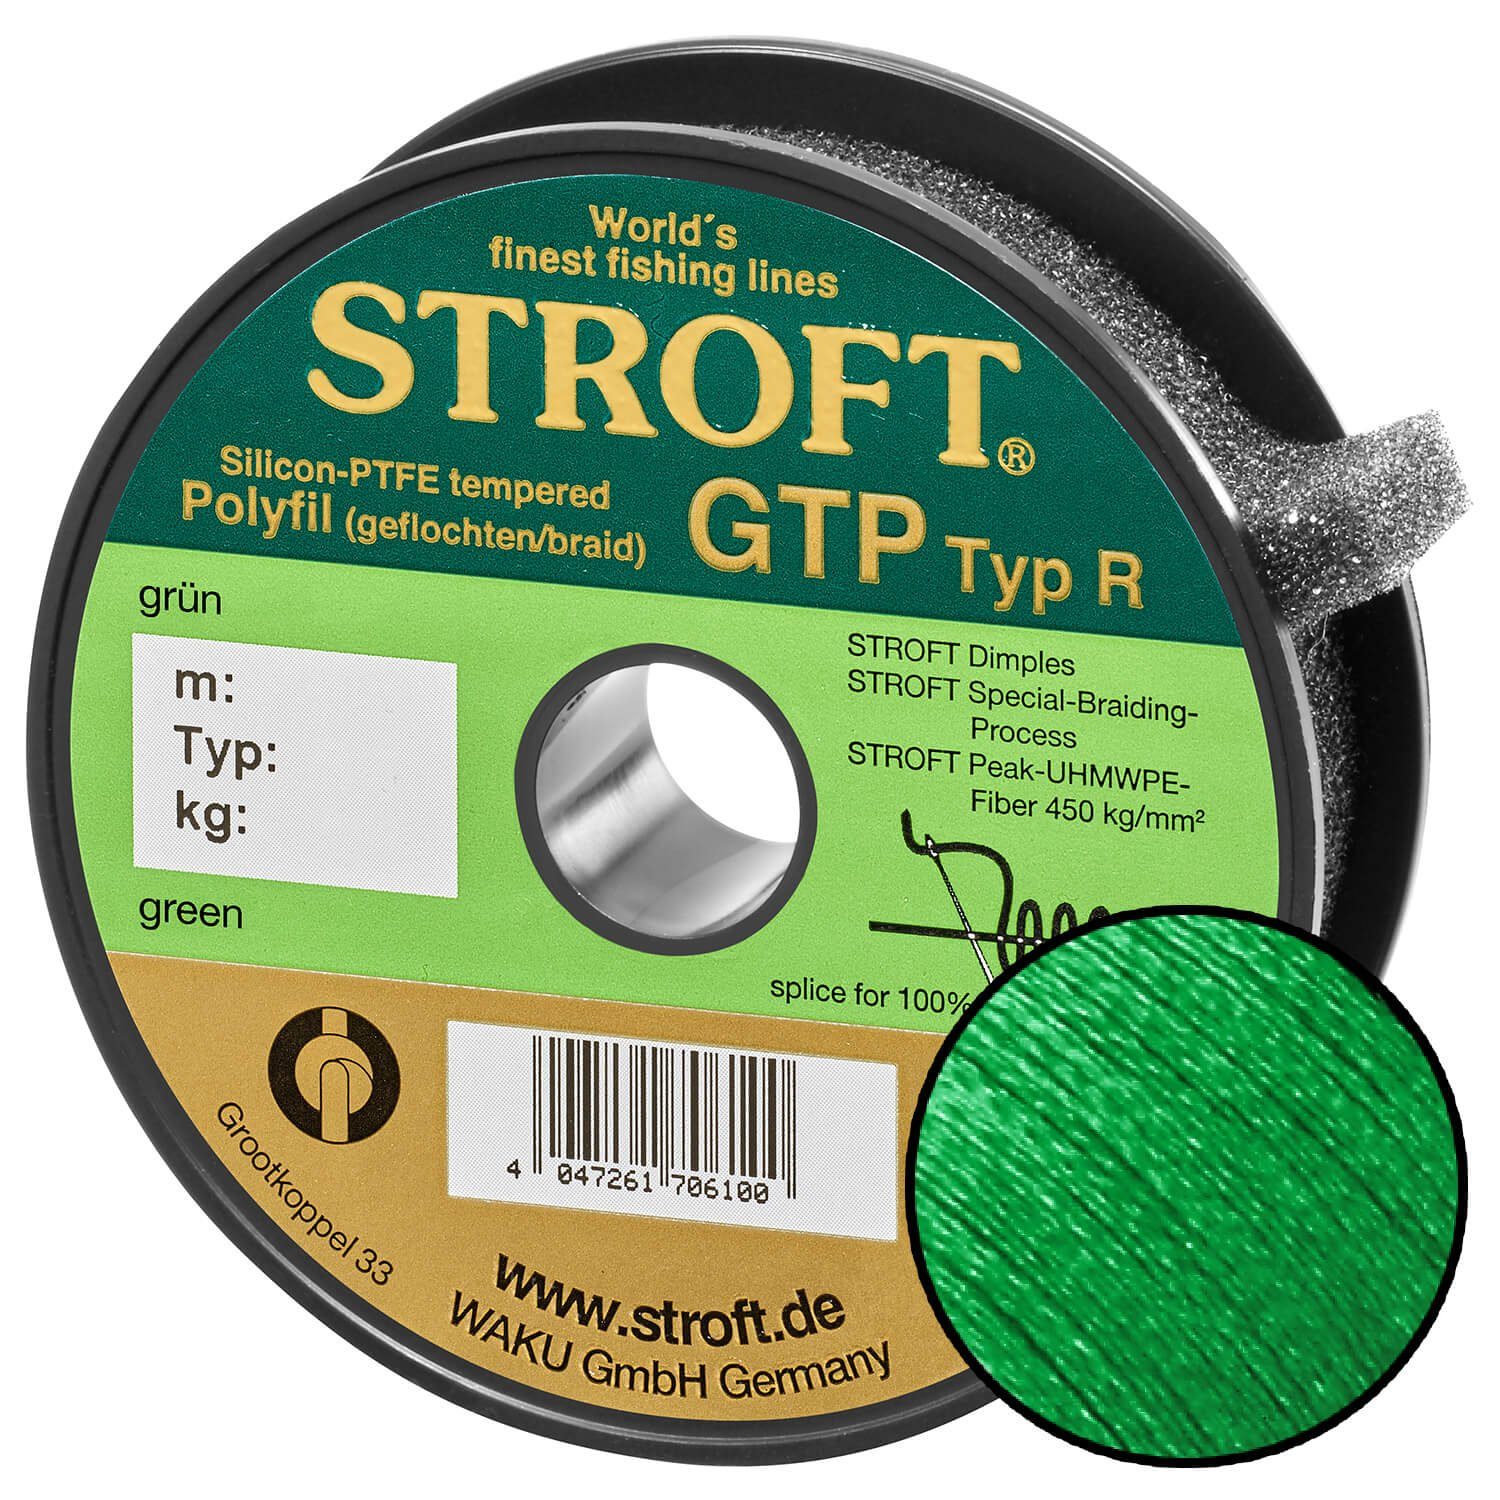 Stroft Angelschnur STROFT GTP Typ R Geflochtene Angelschnur 150m grün, 150 m Länge, 0.15 mm Fadendurchmesser, (1-St), 4.5kg Tragkraft